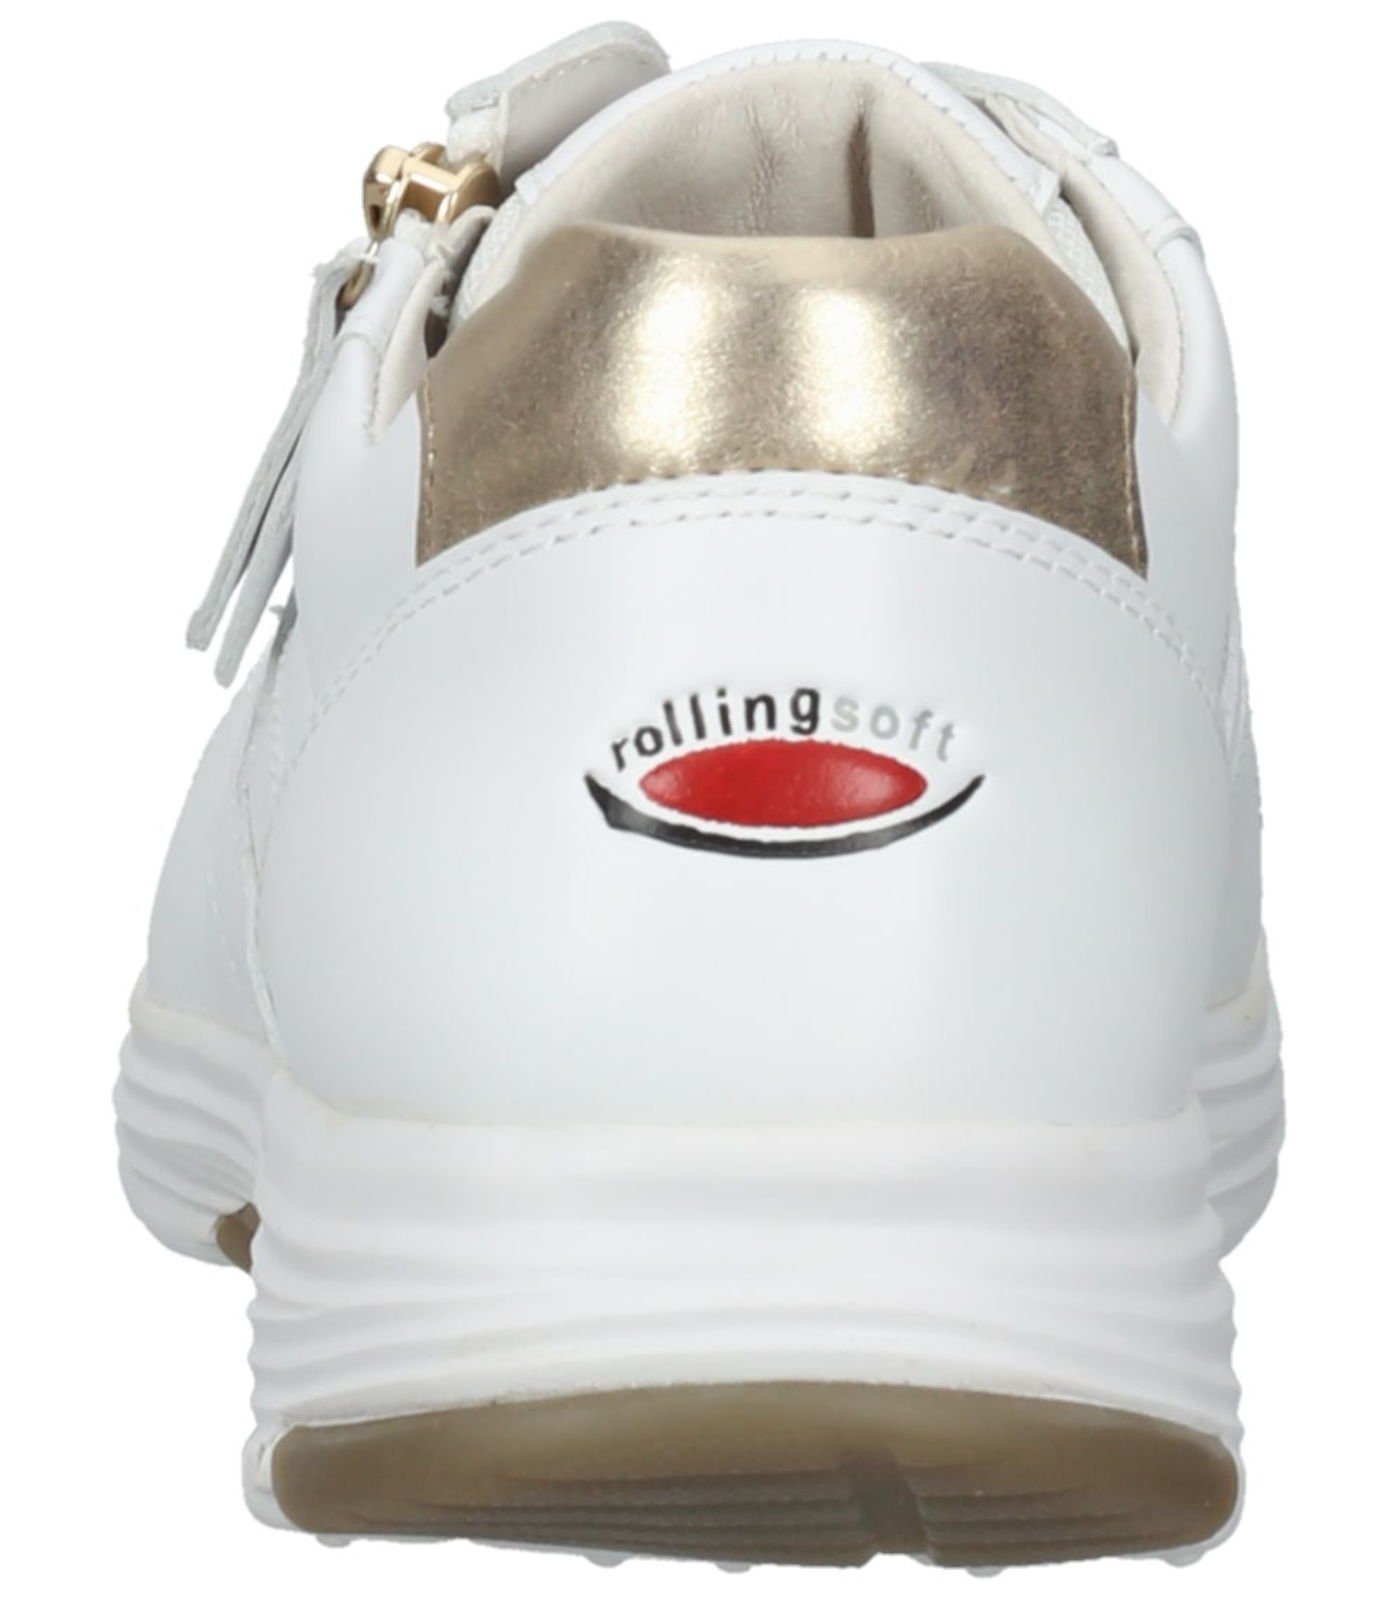 weiss/platino/ 51 Leder Sneaker Sneaker Gabor